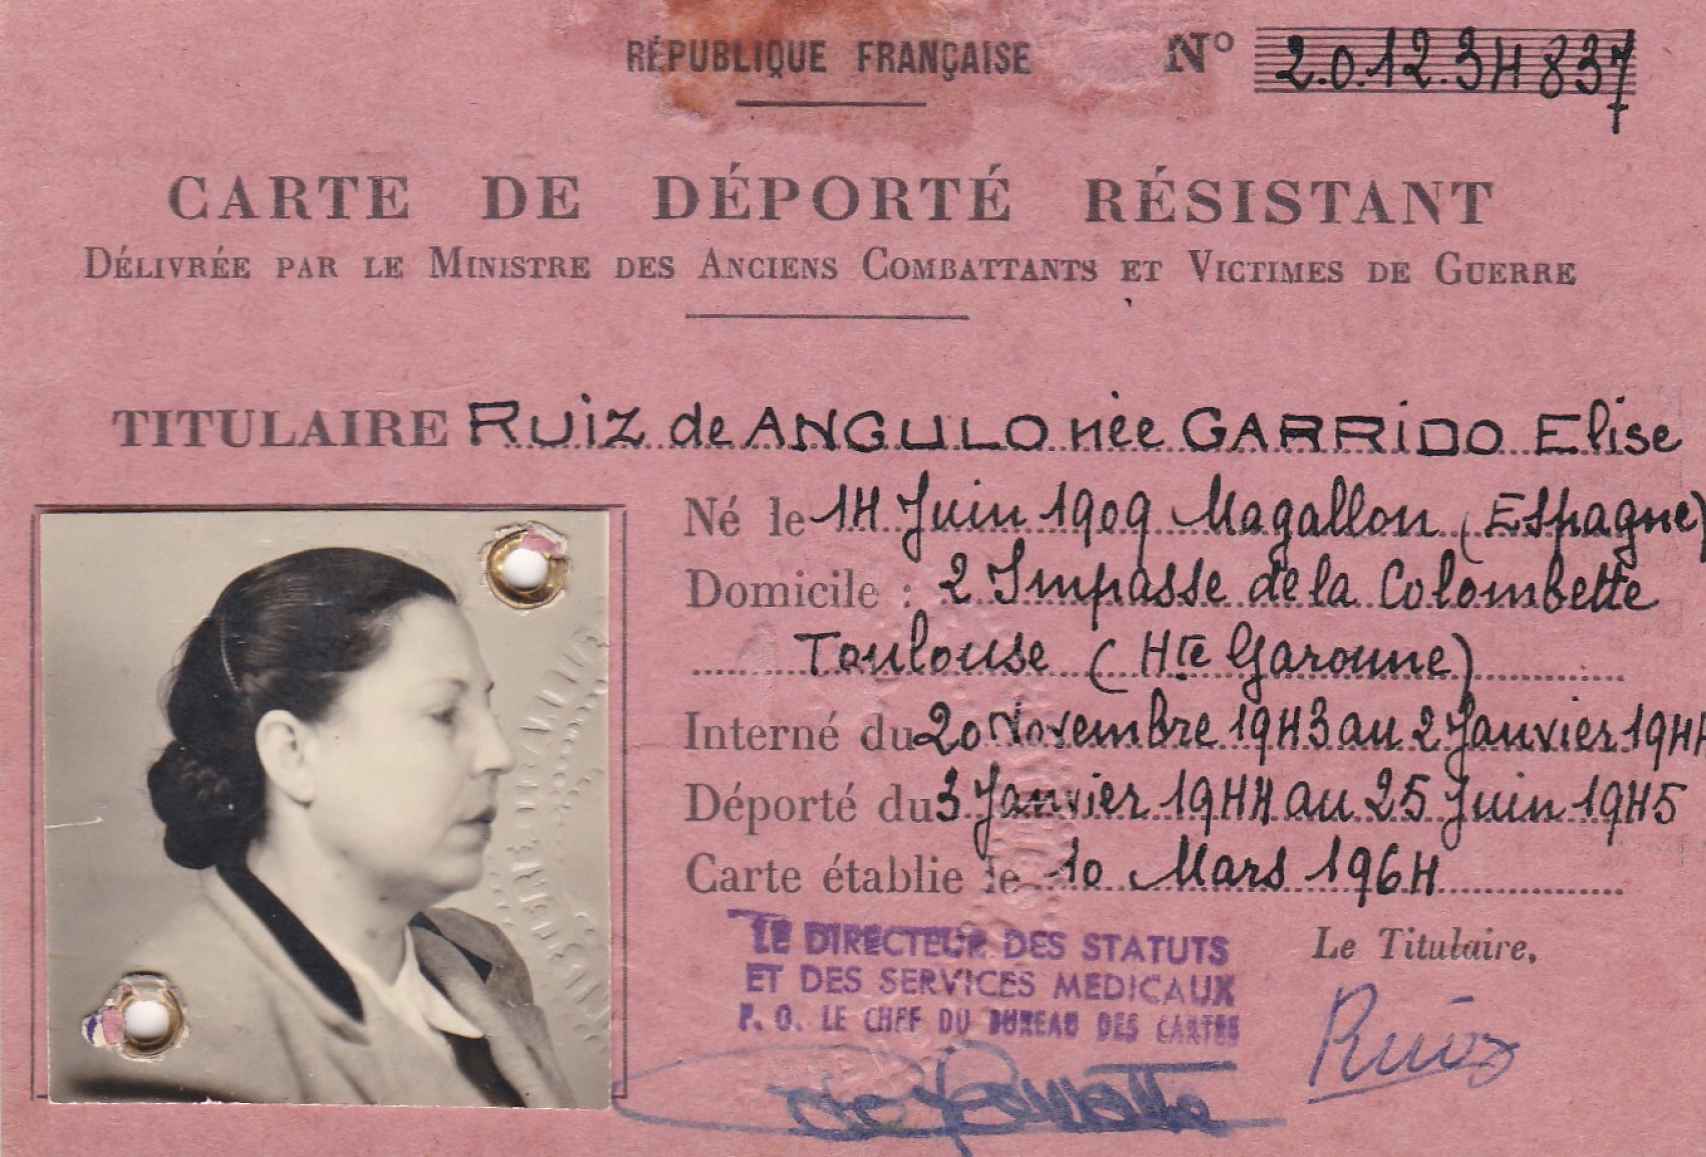 Carnet de deportada resistente de Elisa Garrido.